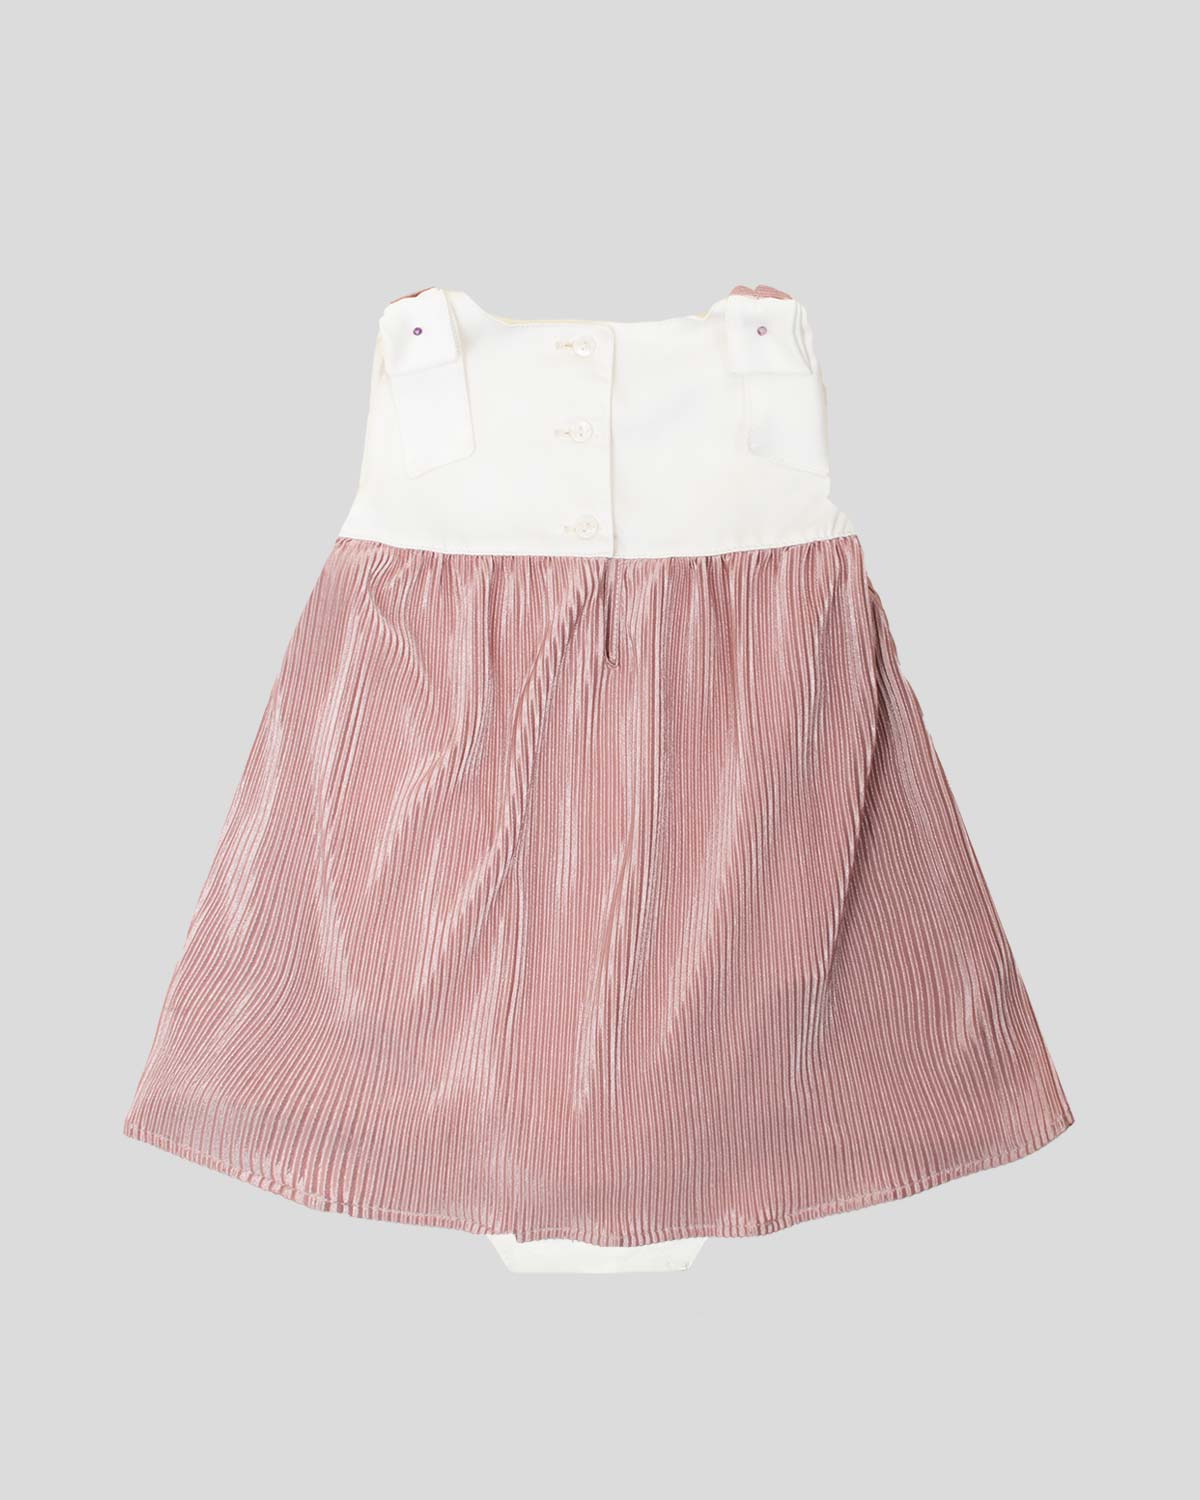 Vestido body blanco y palo de rosa en tela plisada con moño para bebé niña